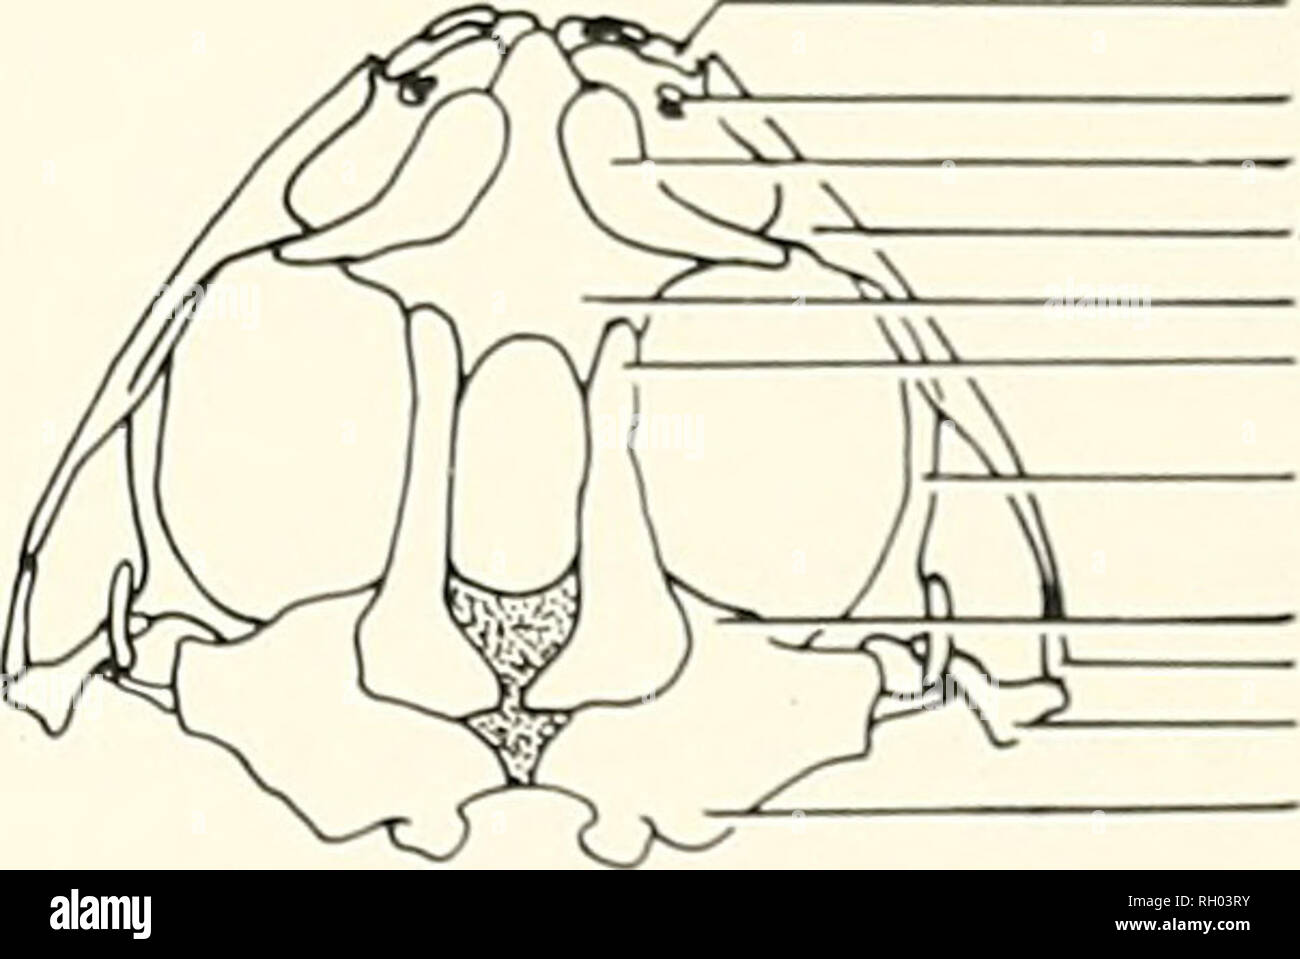 . Bulletin. La science ; natural history ; histoire naturelle. NOUS AKCII RliSI DES GROUPES D'ESPÈCES c;de rainettes faux-NORD-AMÉRICAIN (genre Pseudacris : FAMILLE HYLIDAE) Sept espèces de grenouilles chorus sont actuellement inclus dans l'Amérique du Nord Hie : Pseudacris brachyphona genre Pseudacris brimleyi, P., P. clarki, I', nigrita, J'. ornata, P. streckeri et /'. triseriata. Ces sept espèces ont été réparties en différents groupes d'inlragcncric par différents auteurs. La plus récente est que designa de Chantell (amer. Midi. Nat., 80:381- 391, 1 %8), qui ont divisé l'espèce existante en deux groupes : l'ornata gro Banque D'Images